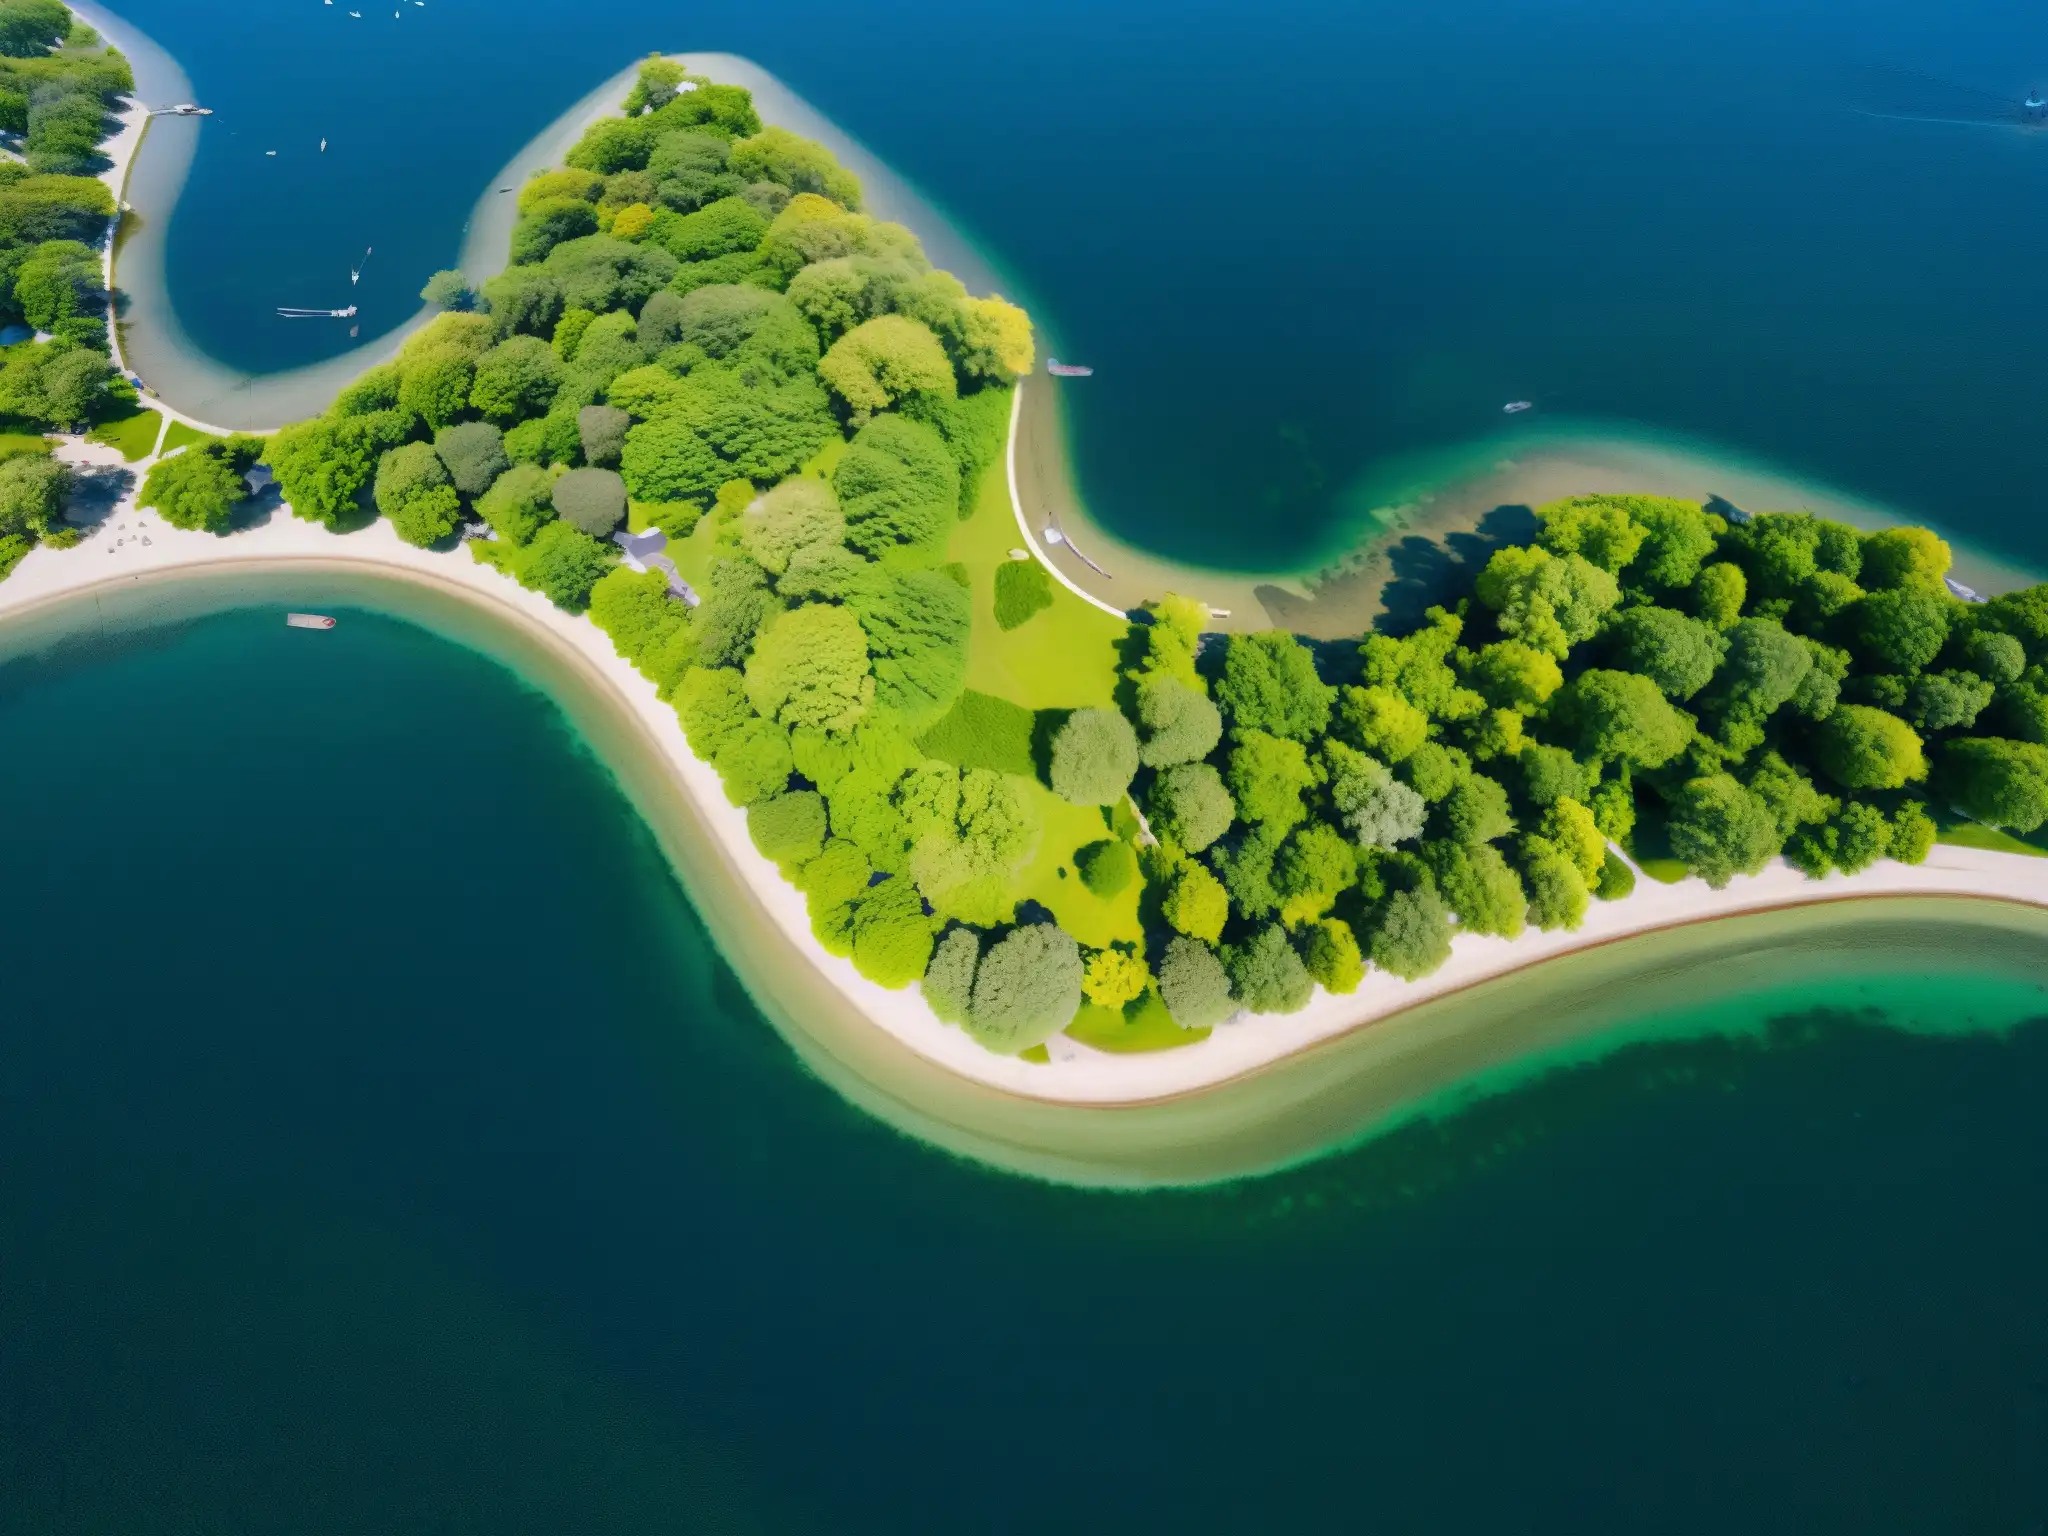 Vista aérea de Toronto Islands con agua, vegetación, barcos y detalles nítidos